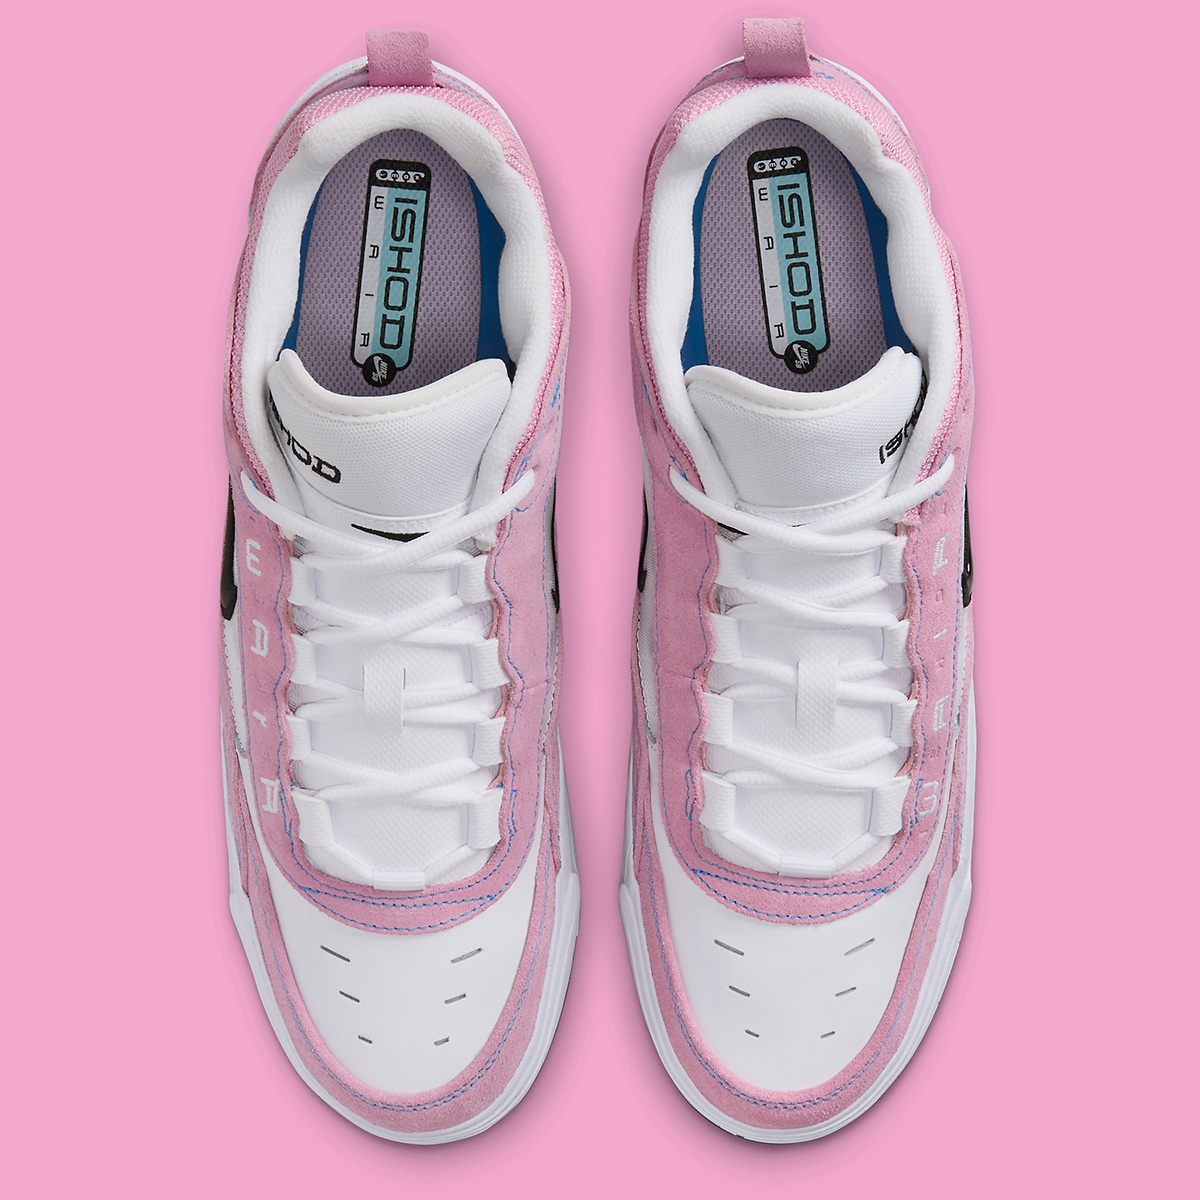 Nike Sb Ishod 2 Pink White Fb2393 600 5